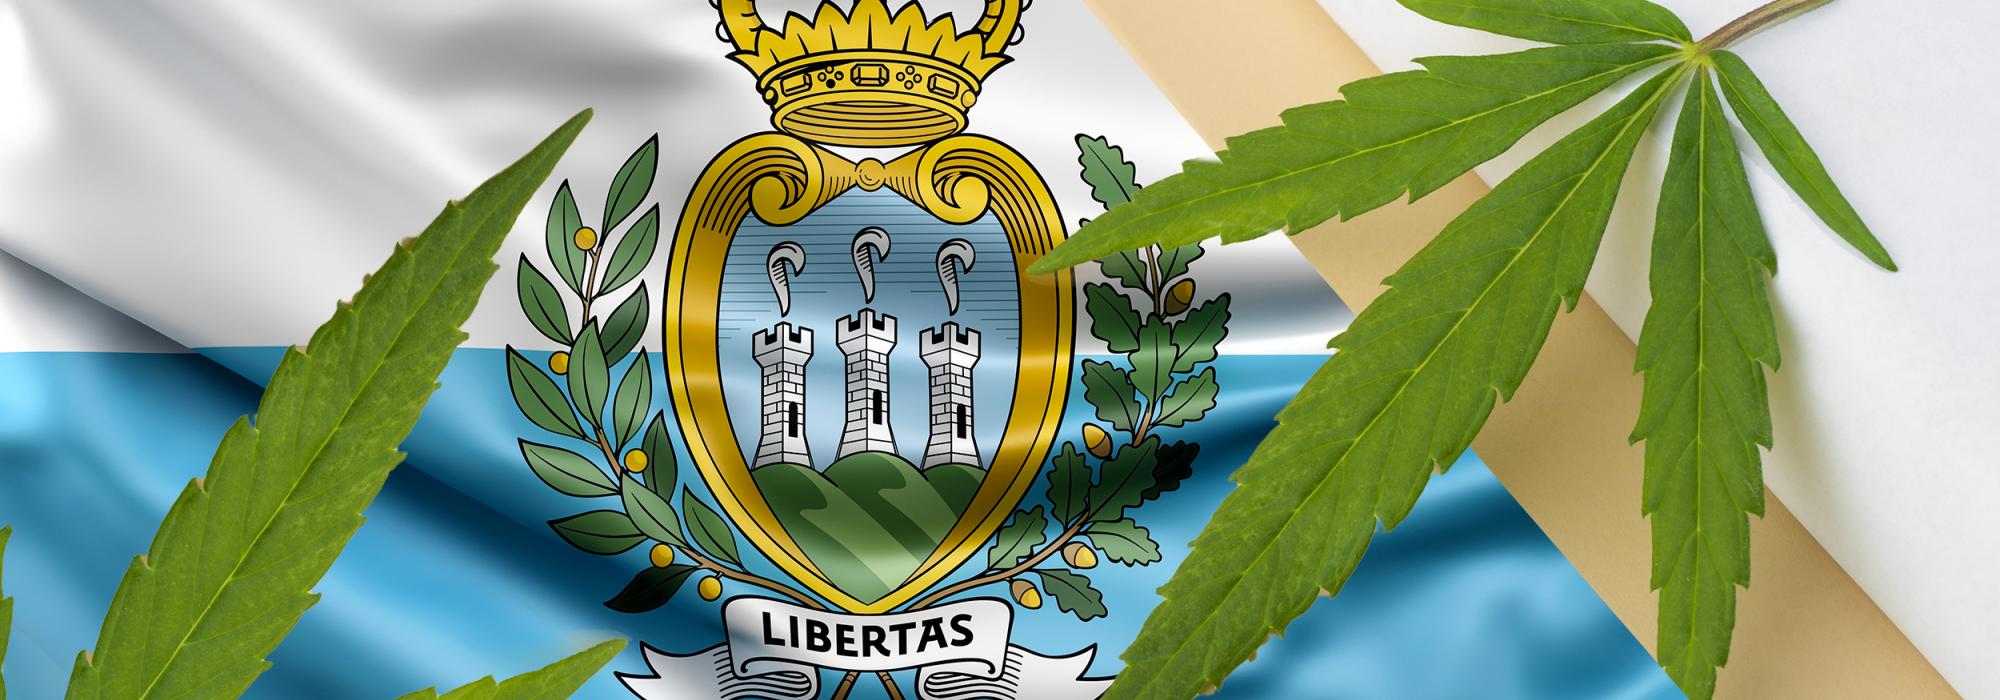 Cannabis terapeutica: a San Marino approvata all'unanimità